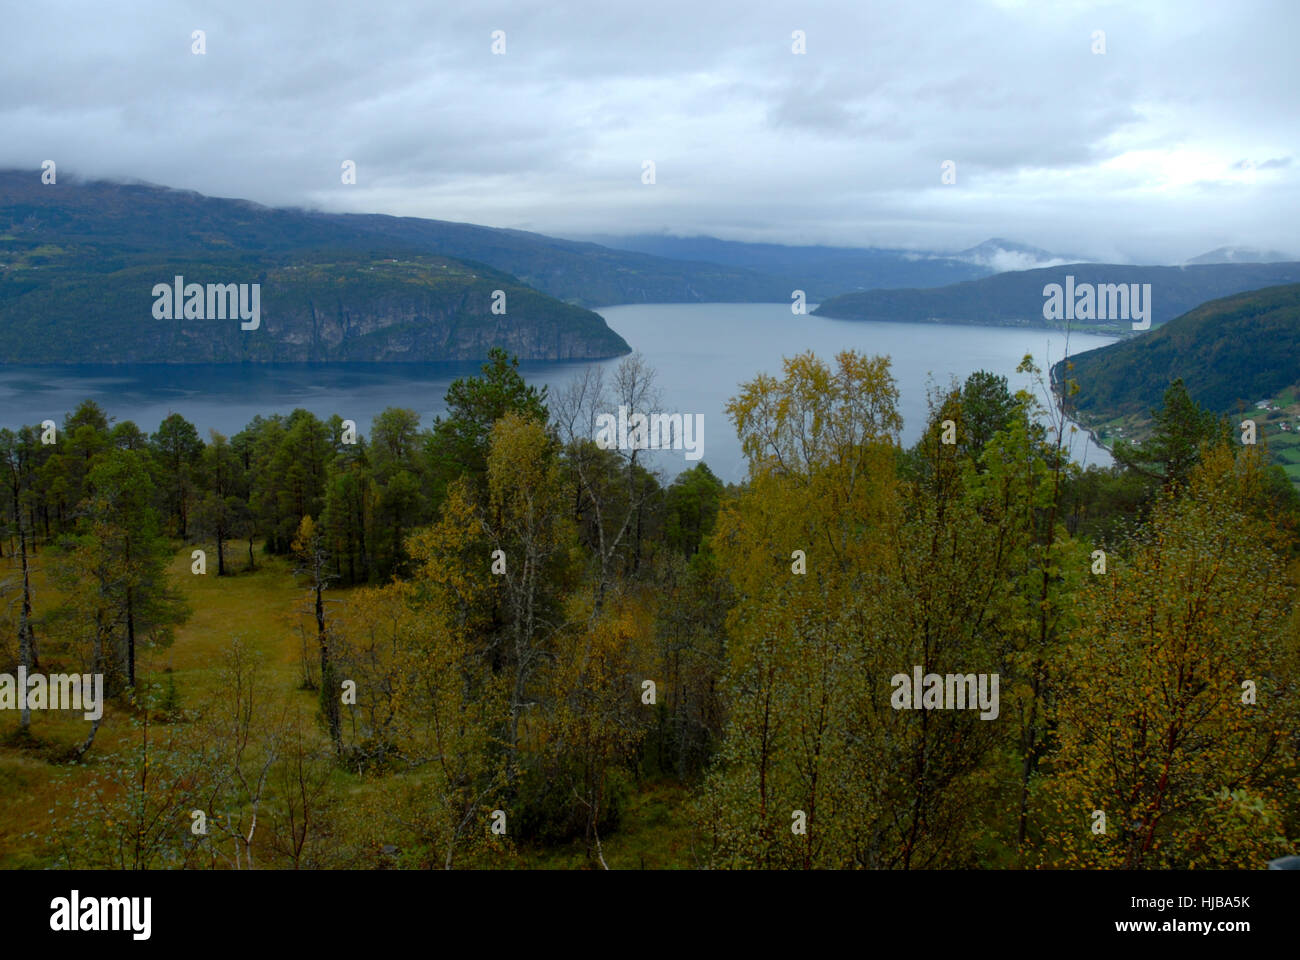 Albero, alberi, Norvegia, fiordo, Firth, montagna, banca, shore, albero, alberi, Foto Stock